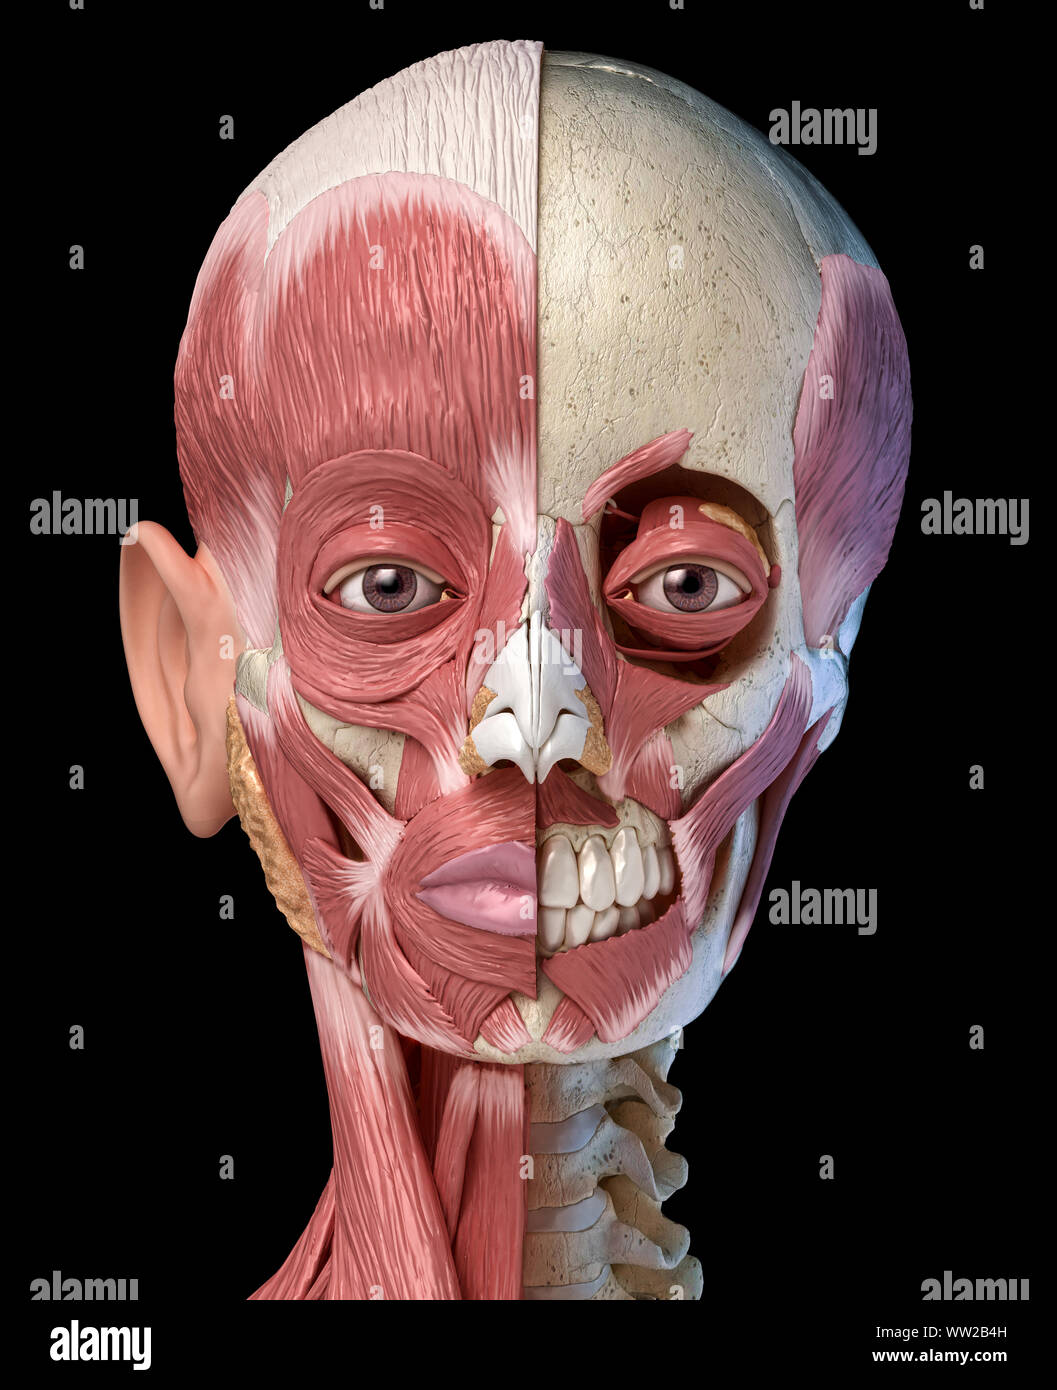 Die menschliche Anatomie 3d-Abbildung des Kopfes Muskeln voll auf der linken Seite und teilweise auf der rechten Seite. Anteriore Ansicht auf schwarzem Hintergrund. Stockfoto